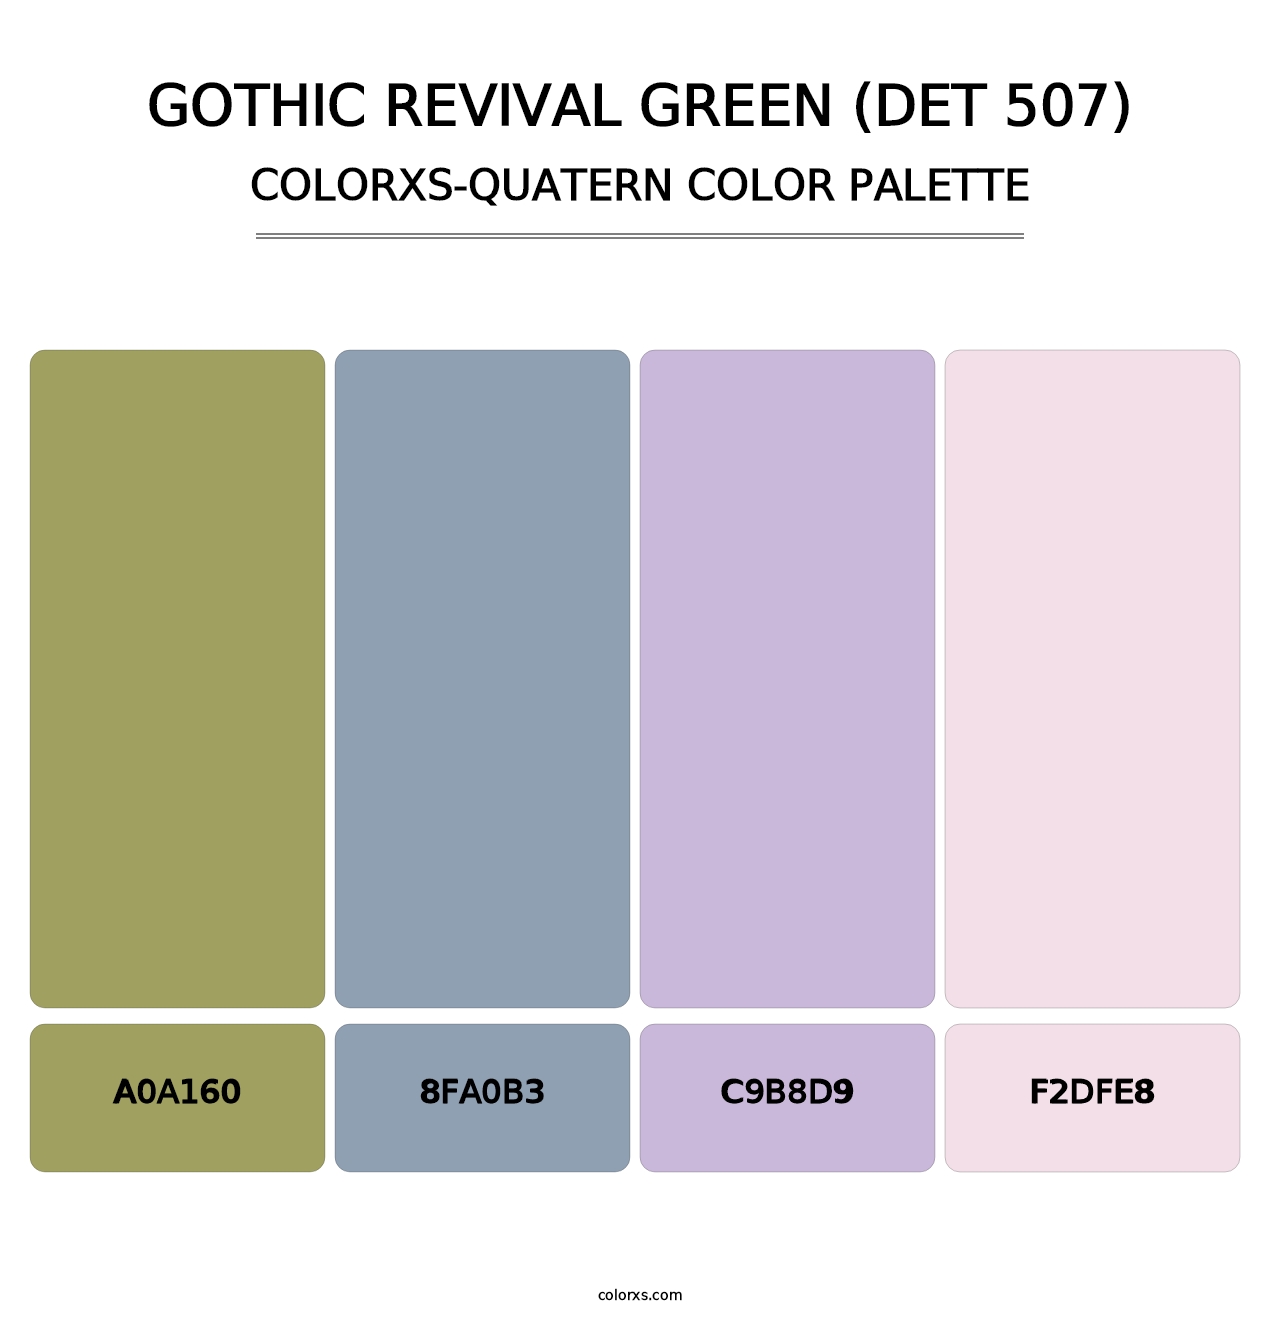 Gothic Revival Green (DET 507) - Colorxs Quatern Palette